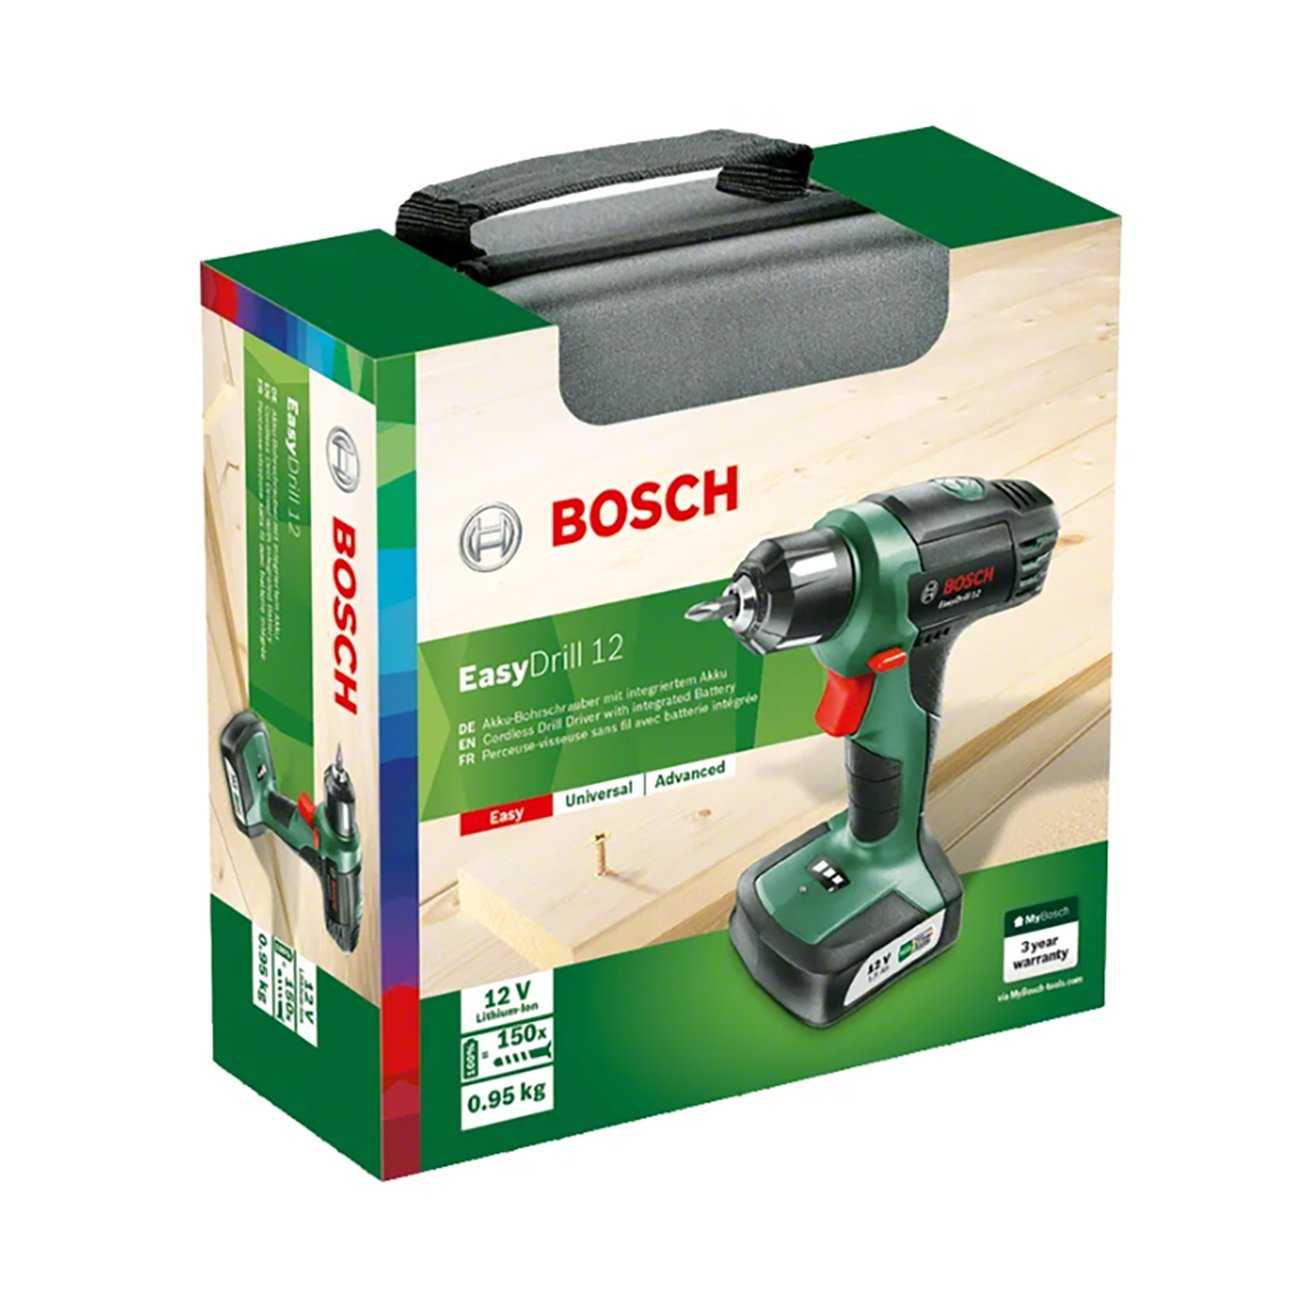 Bosch easydrill 1200 1.5ah x2 case отзывы покупателей и специалистов на отзовик